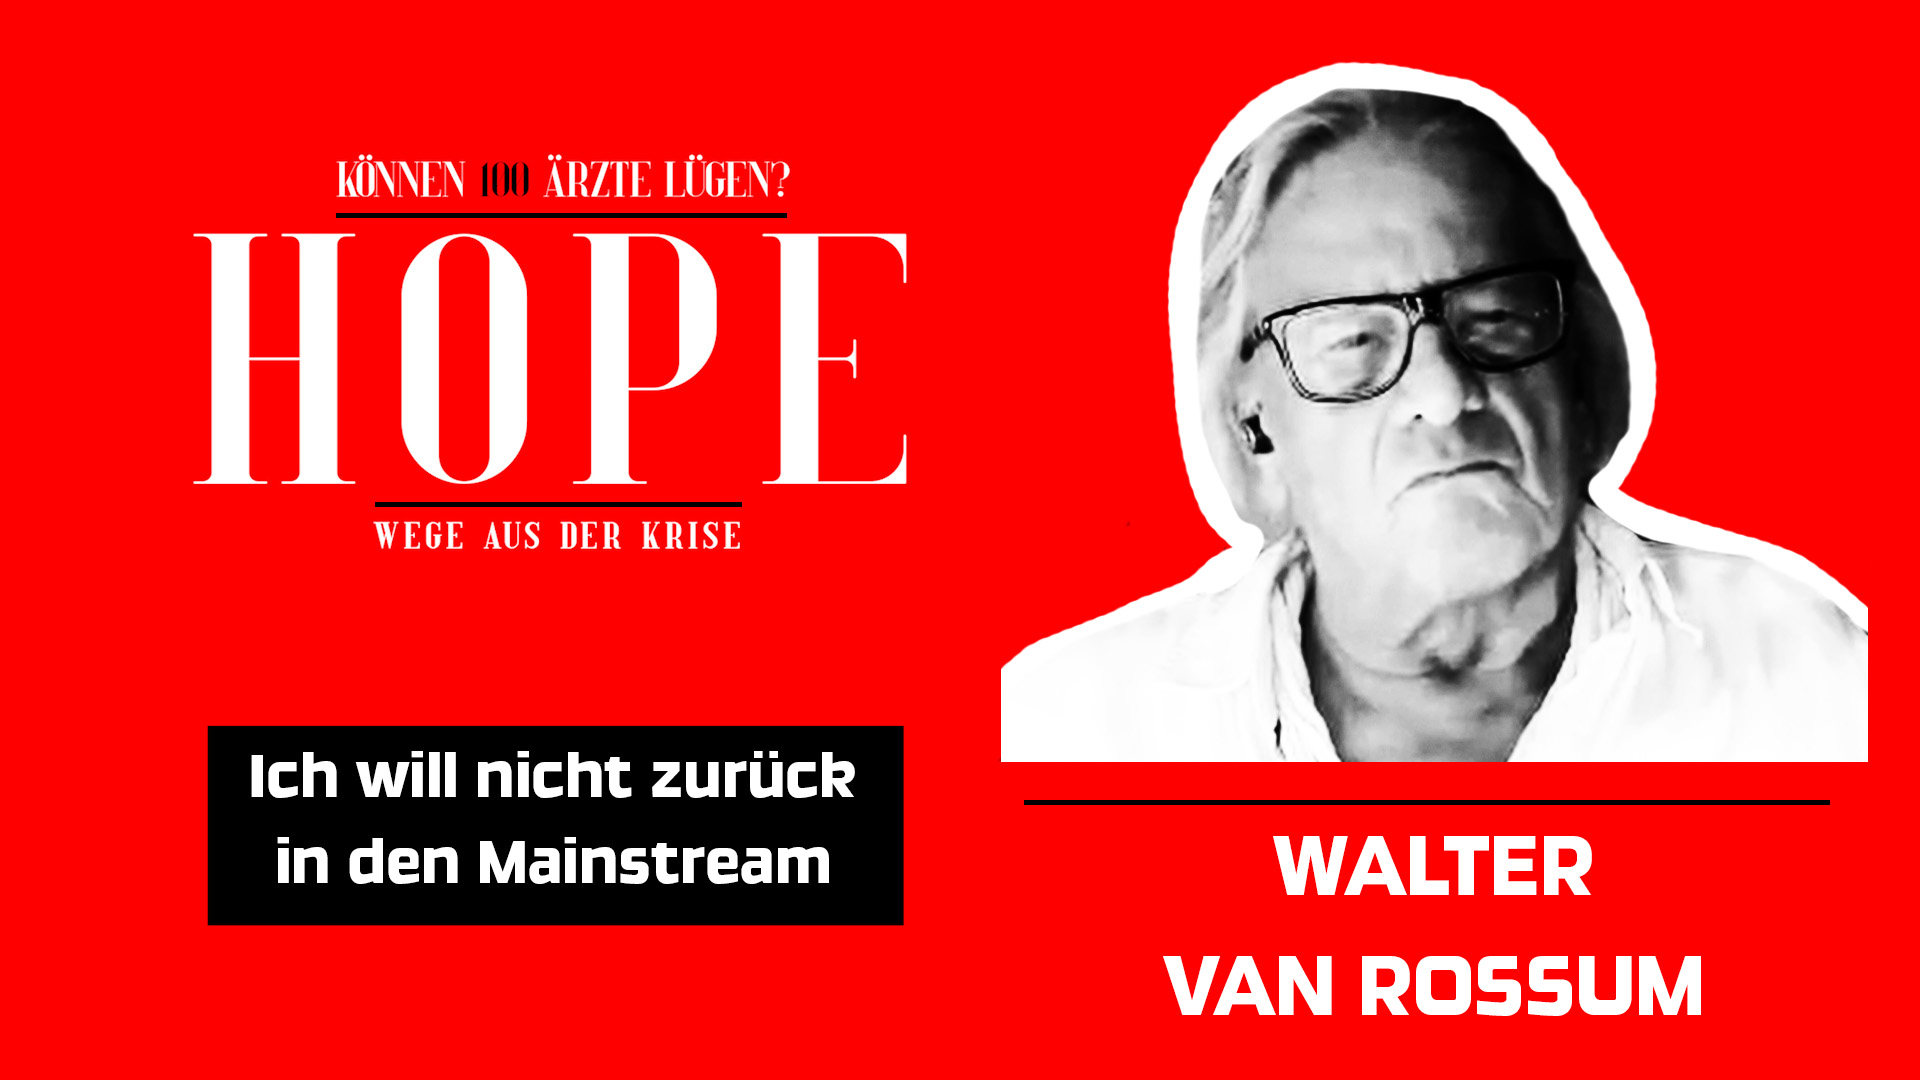 Walter van Rossum